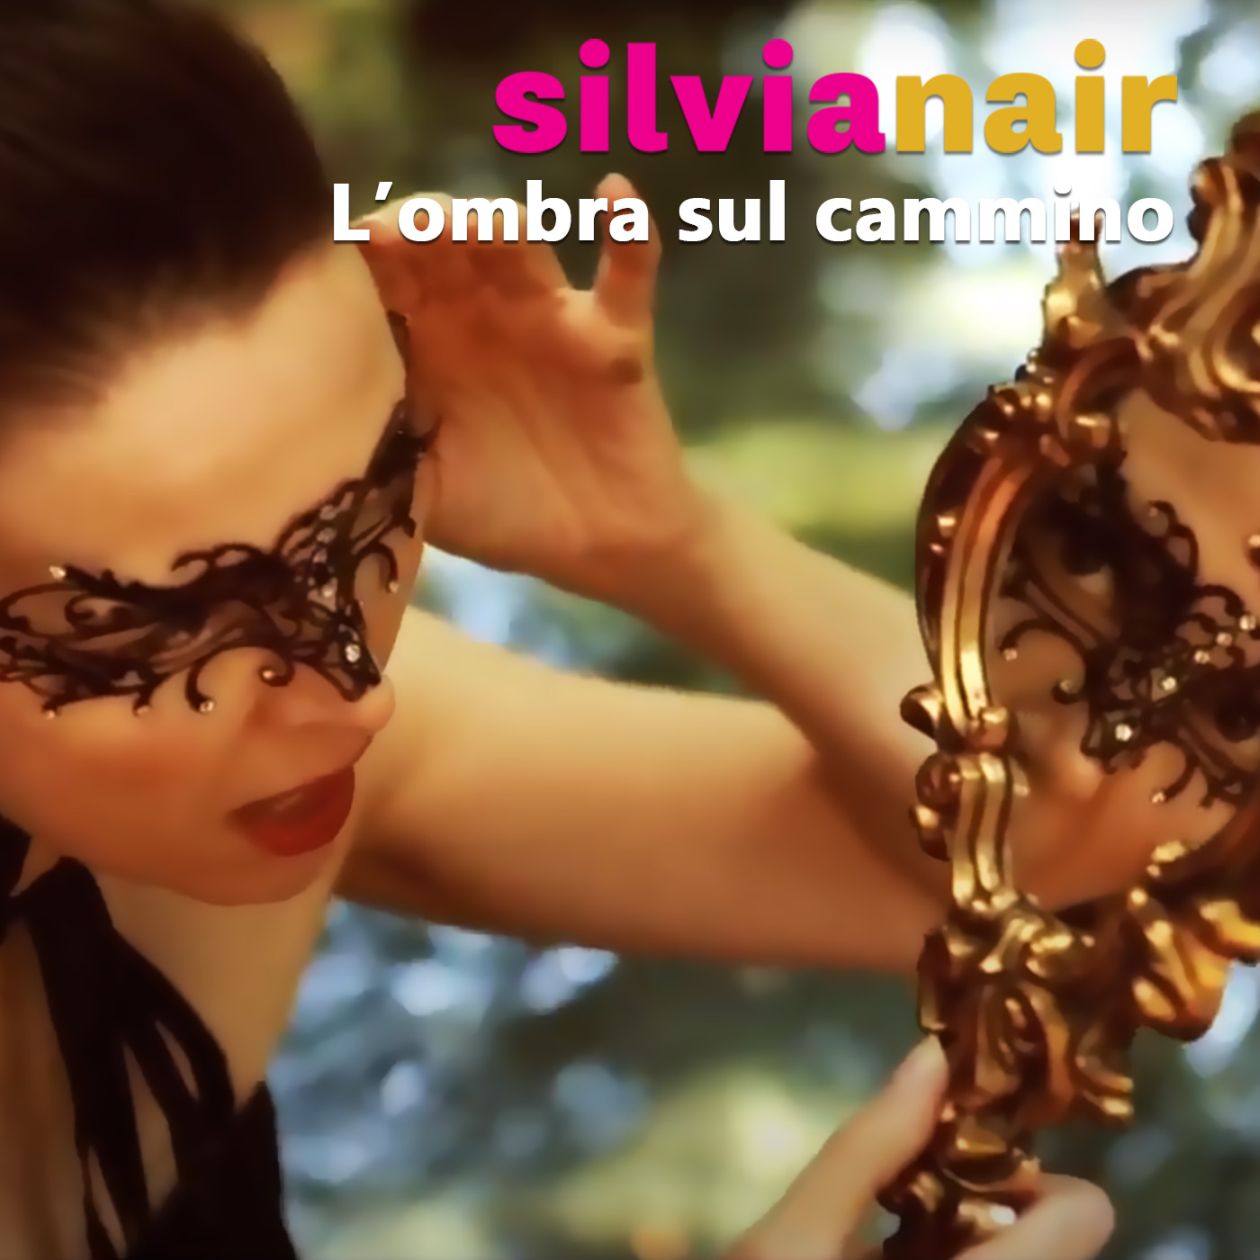 SILVIA NAIR venerdì 18 settembre esce in radio e in digitale L'OMBRA SUL CAMMINO secondo singolo che anticipa il nuovo album di inediti Luci e Ombre, in uscita il 9 ottobre.